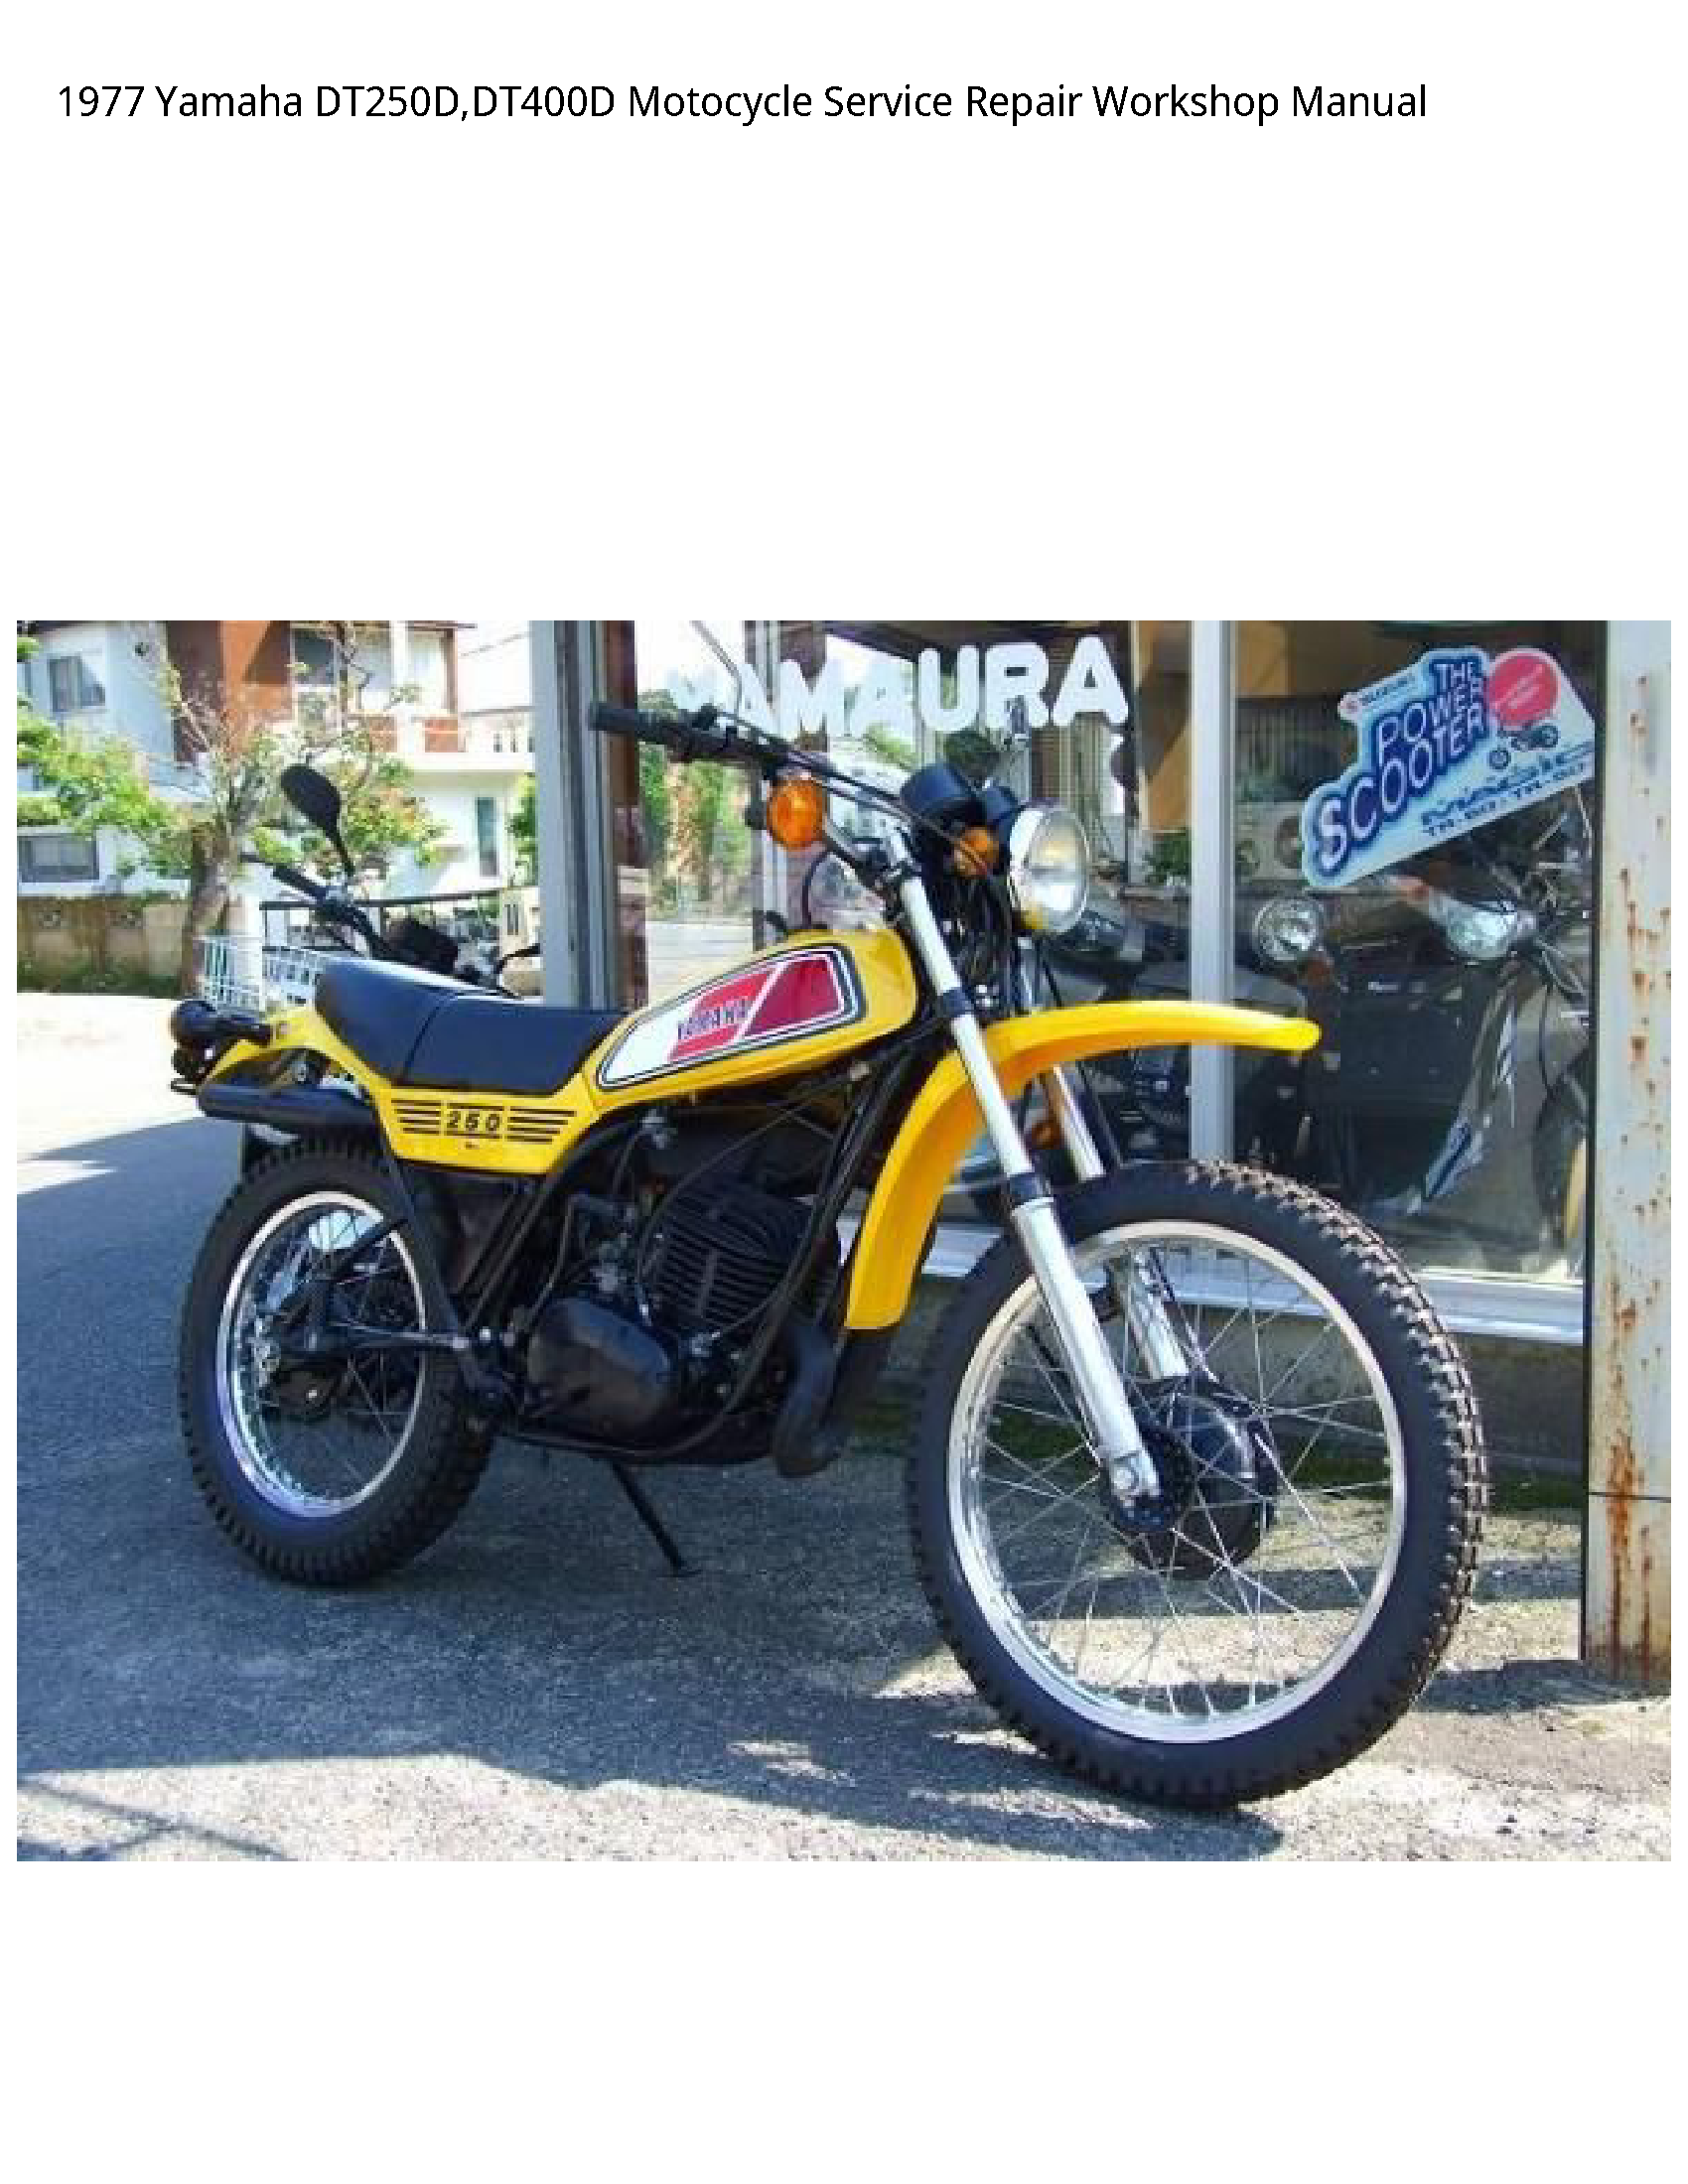 Yamaha DT250D Motocycle manual